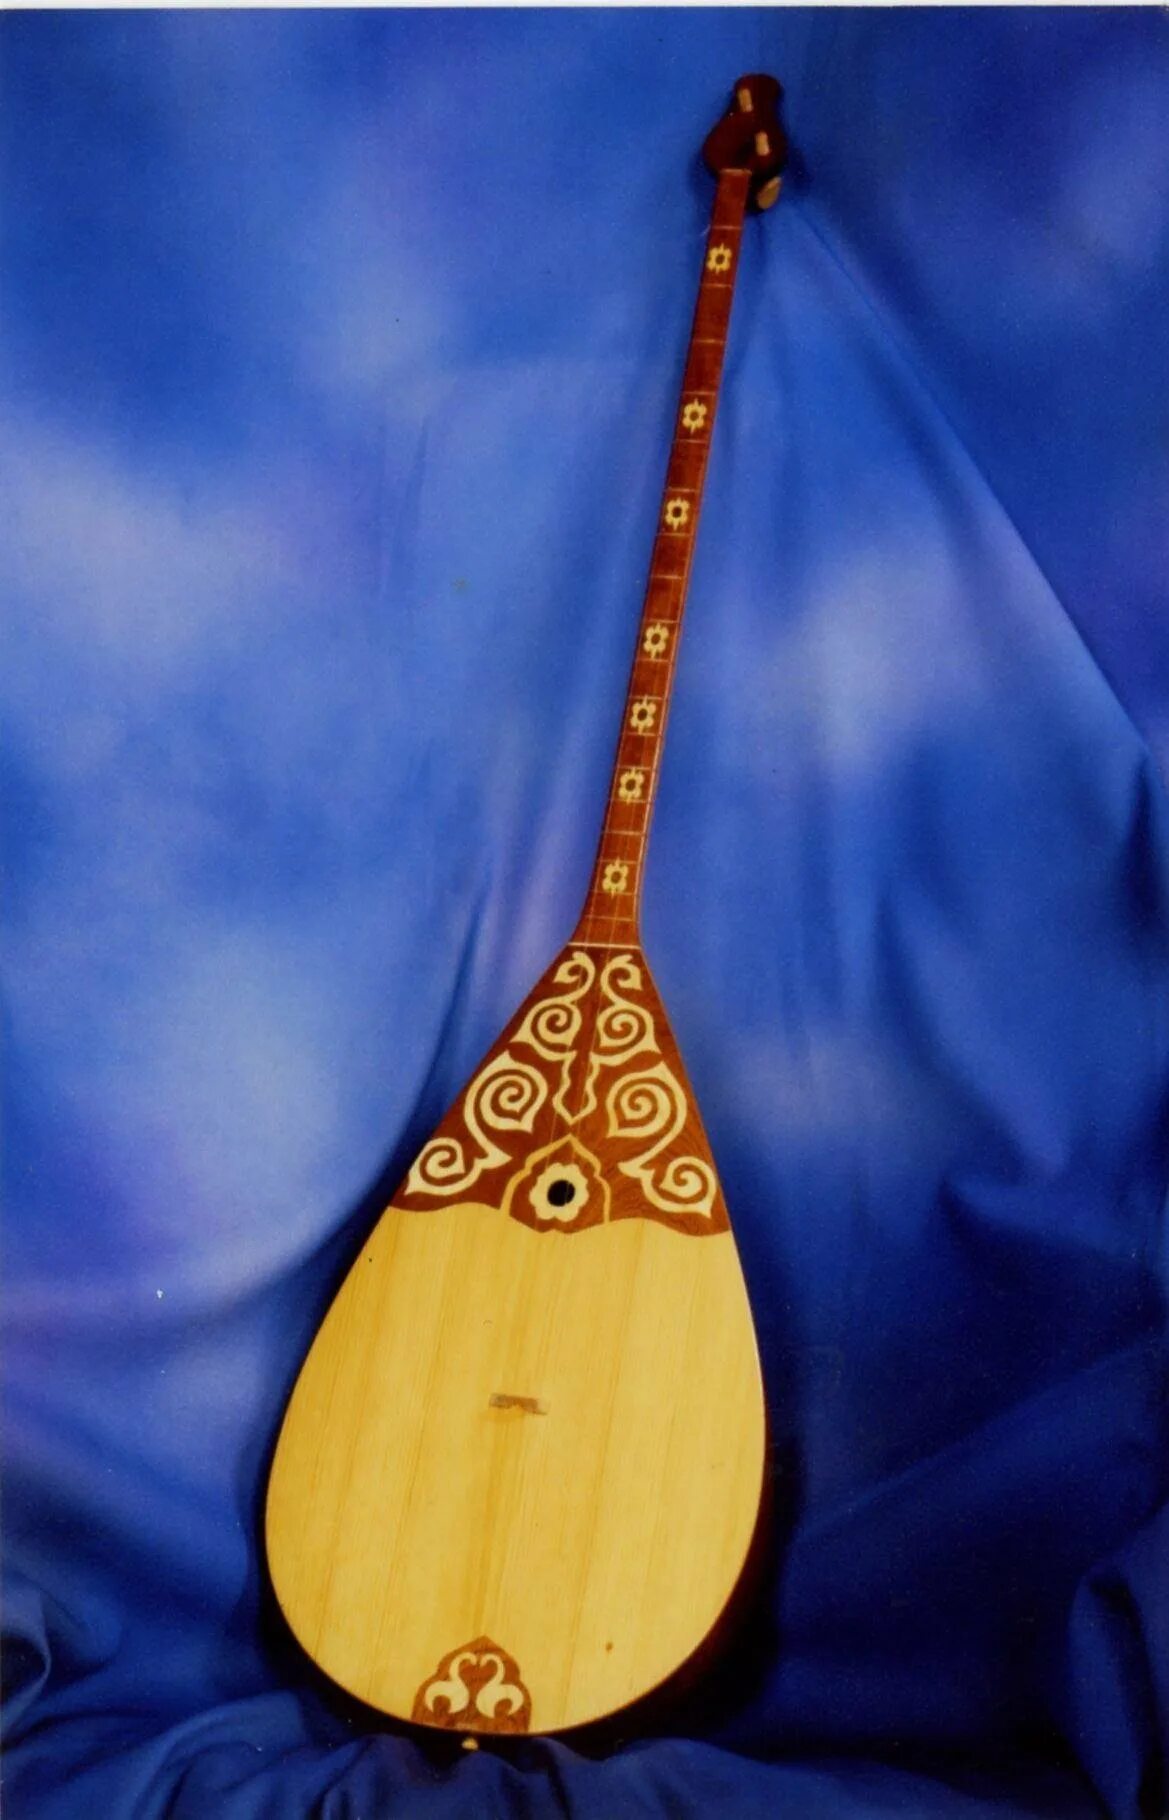 Домбра казахская. Казах с домброй. Казахский народный инструмент домбра. Двухструнная домбра.